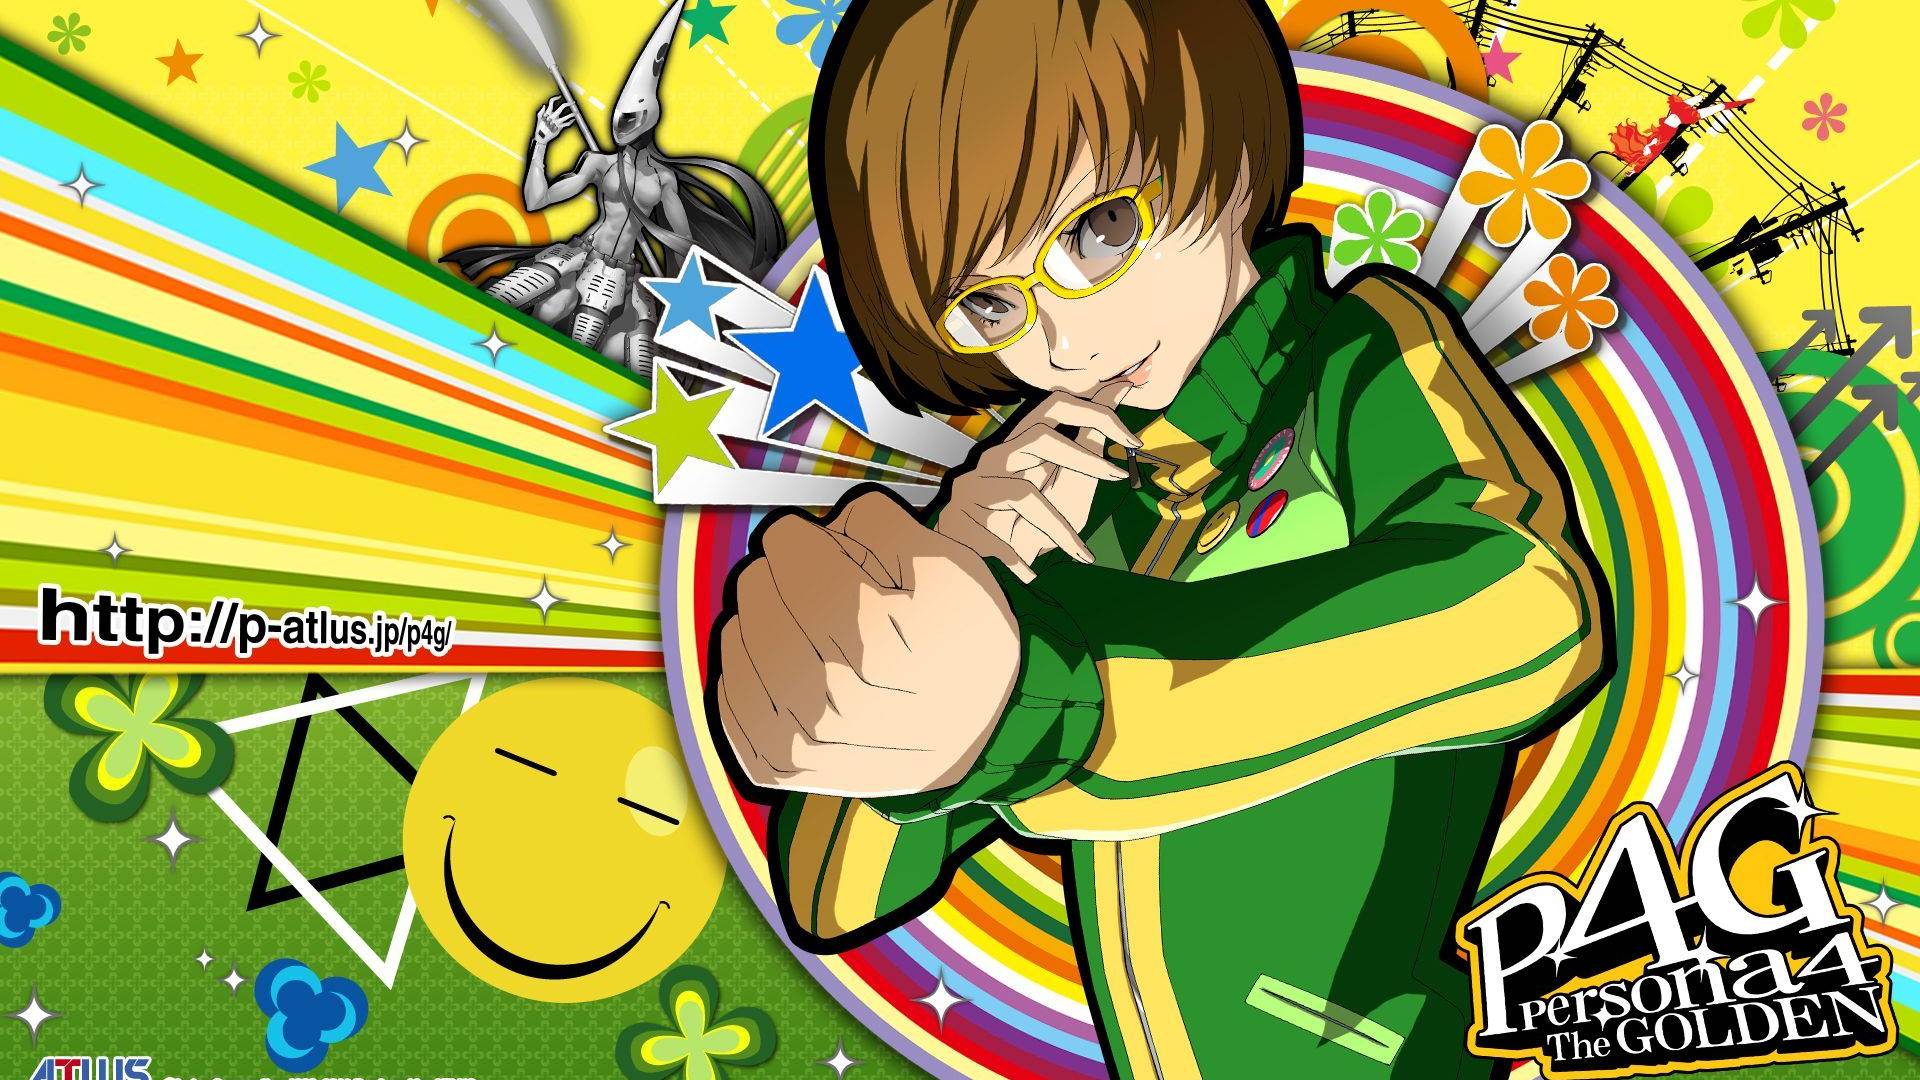 Persona 4 Chie: Uma imagem mostra Chie de Persona 4 Golden, com sua icônica roupa verde e amarela